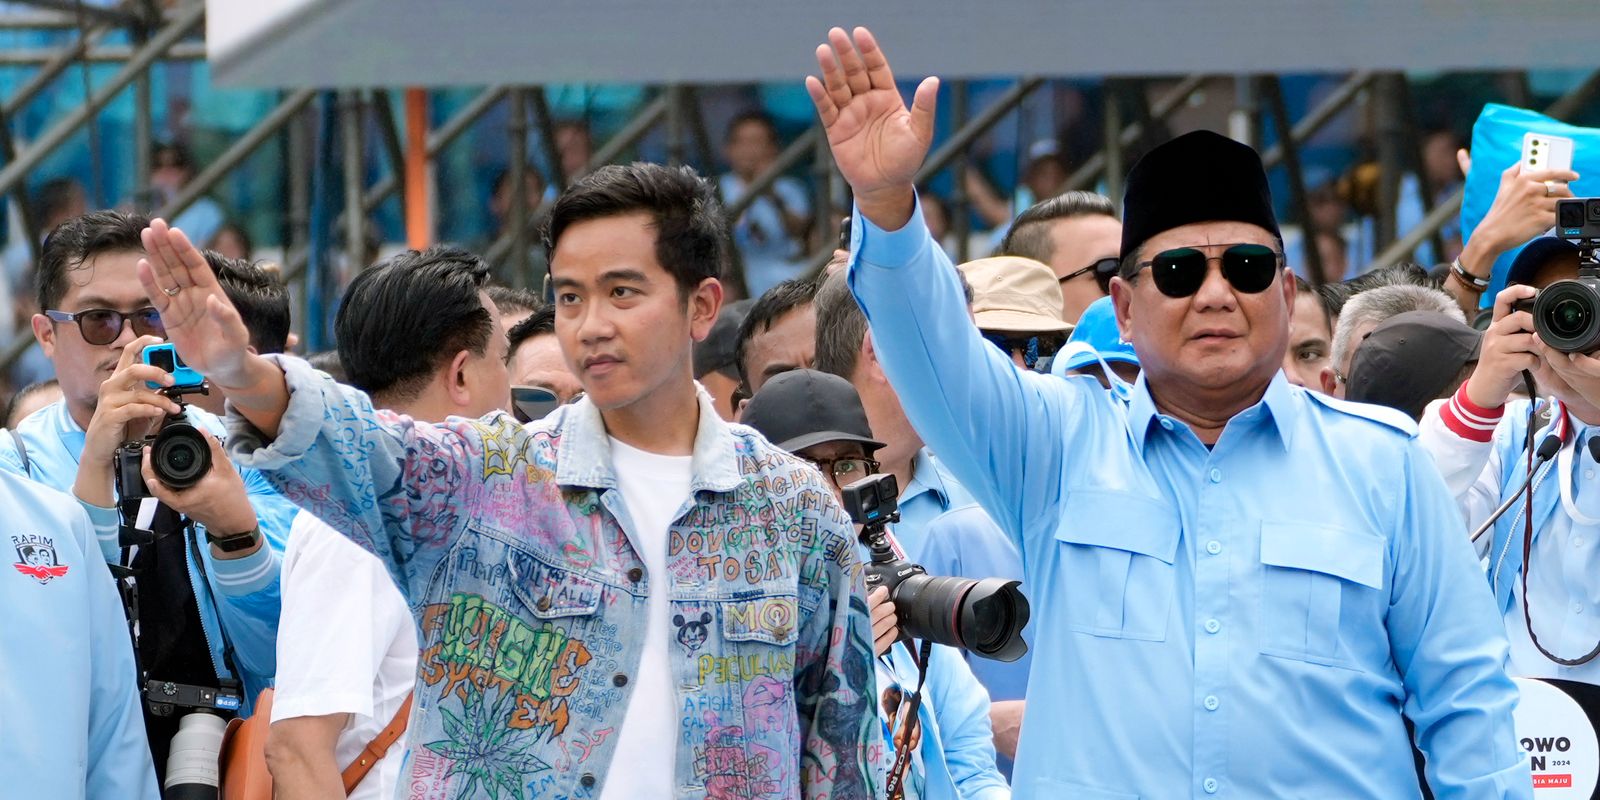 uppgifter: indonesiens regering försöker rigga valet